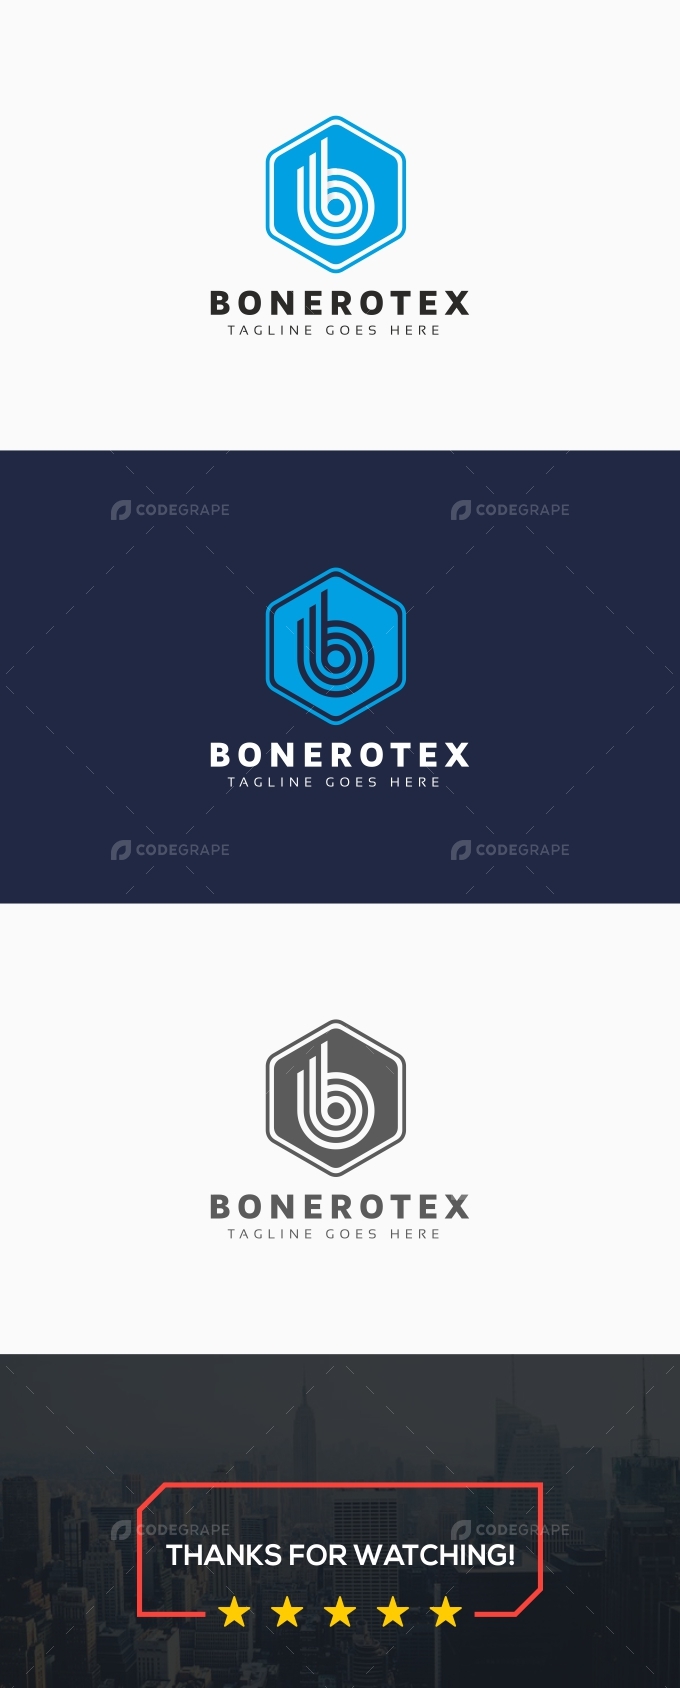 B Letter Hexagon Logo